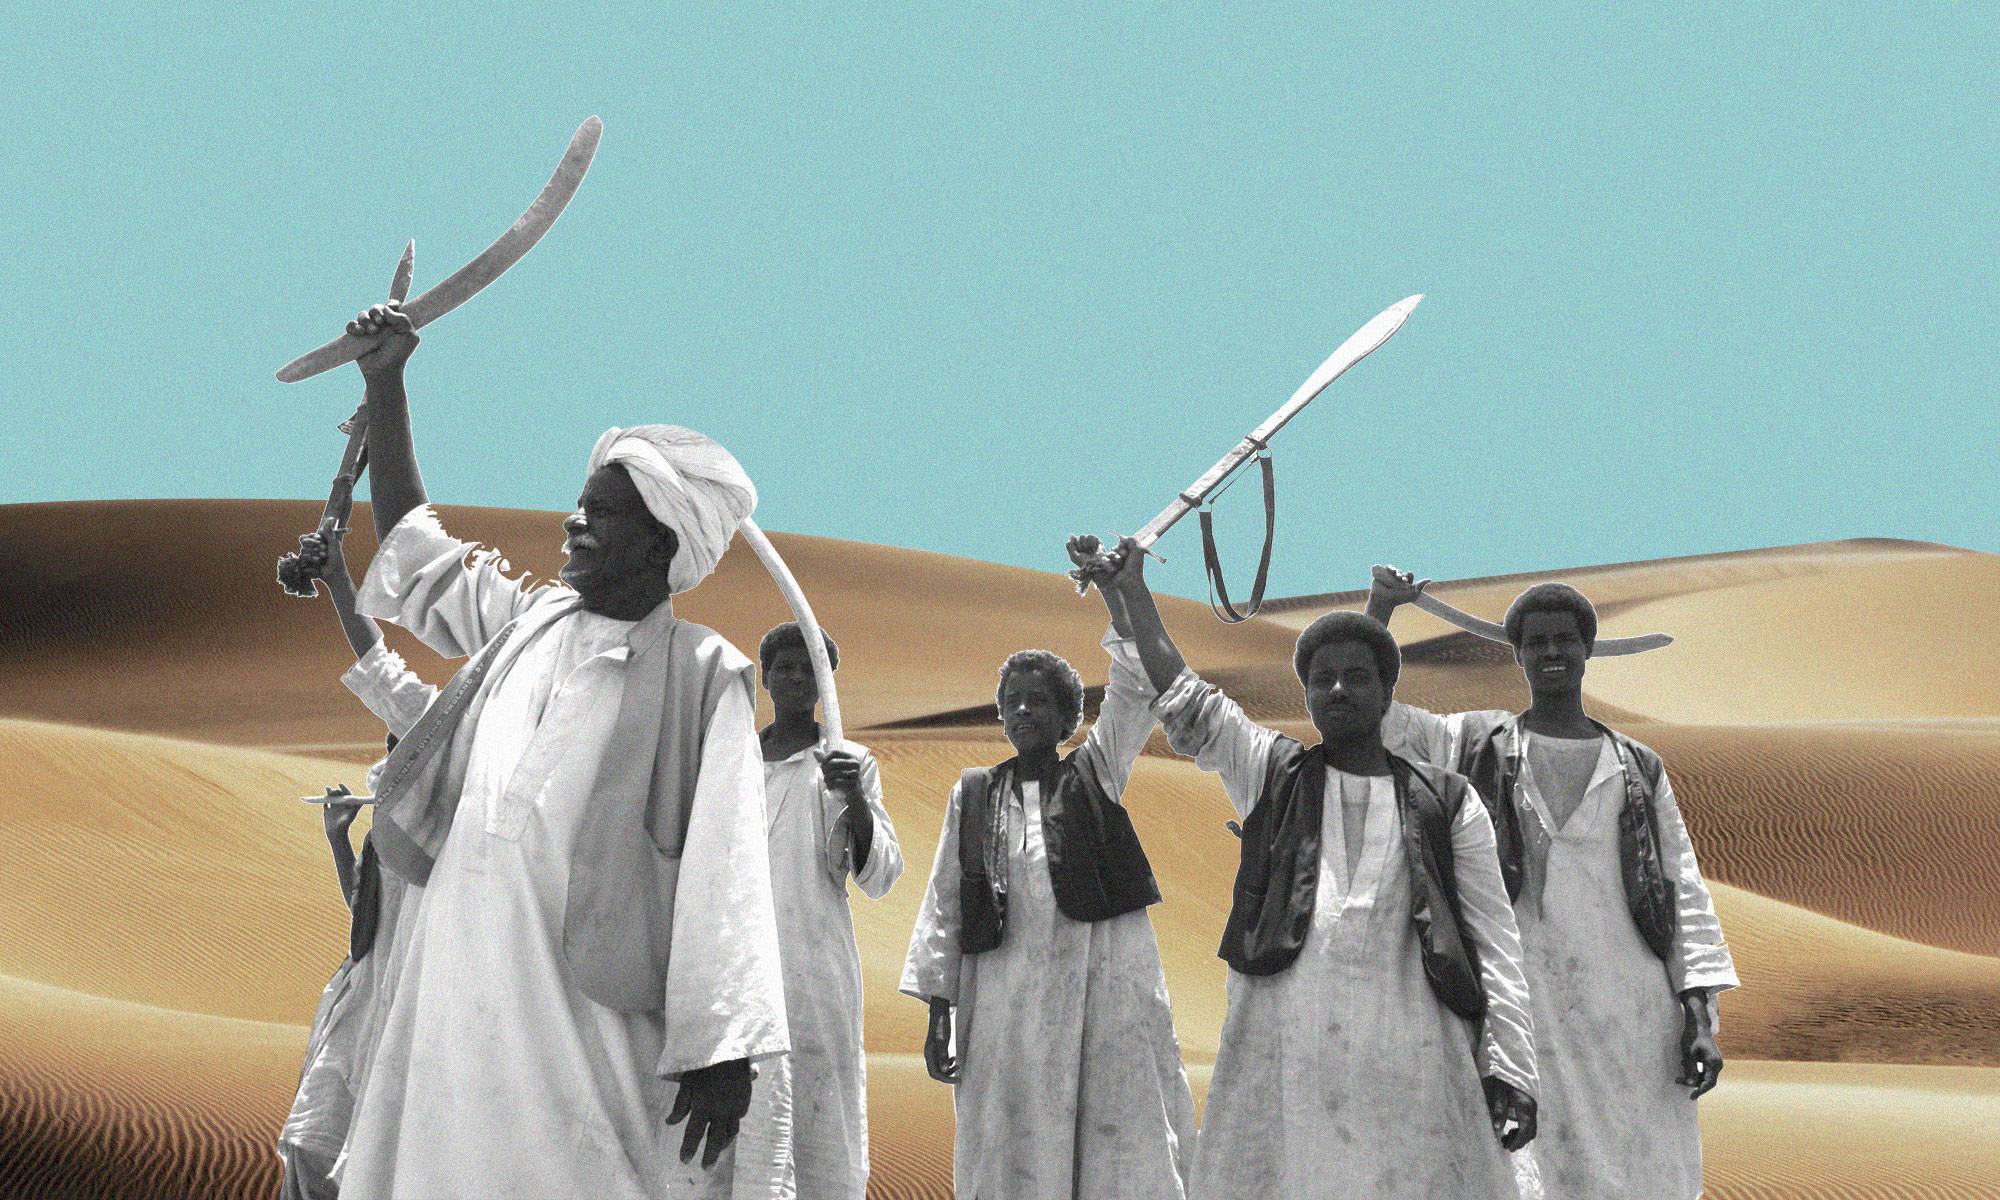 شرق السودان قوى ترفع مطلب تقرير المصير وأخرى تصر على تحقيق مطالبها بدون انفصال رصيف 22